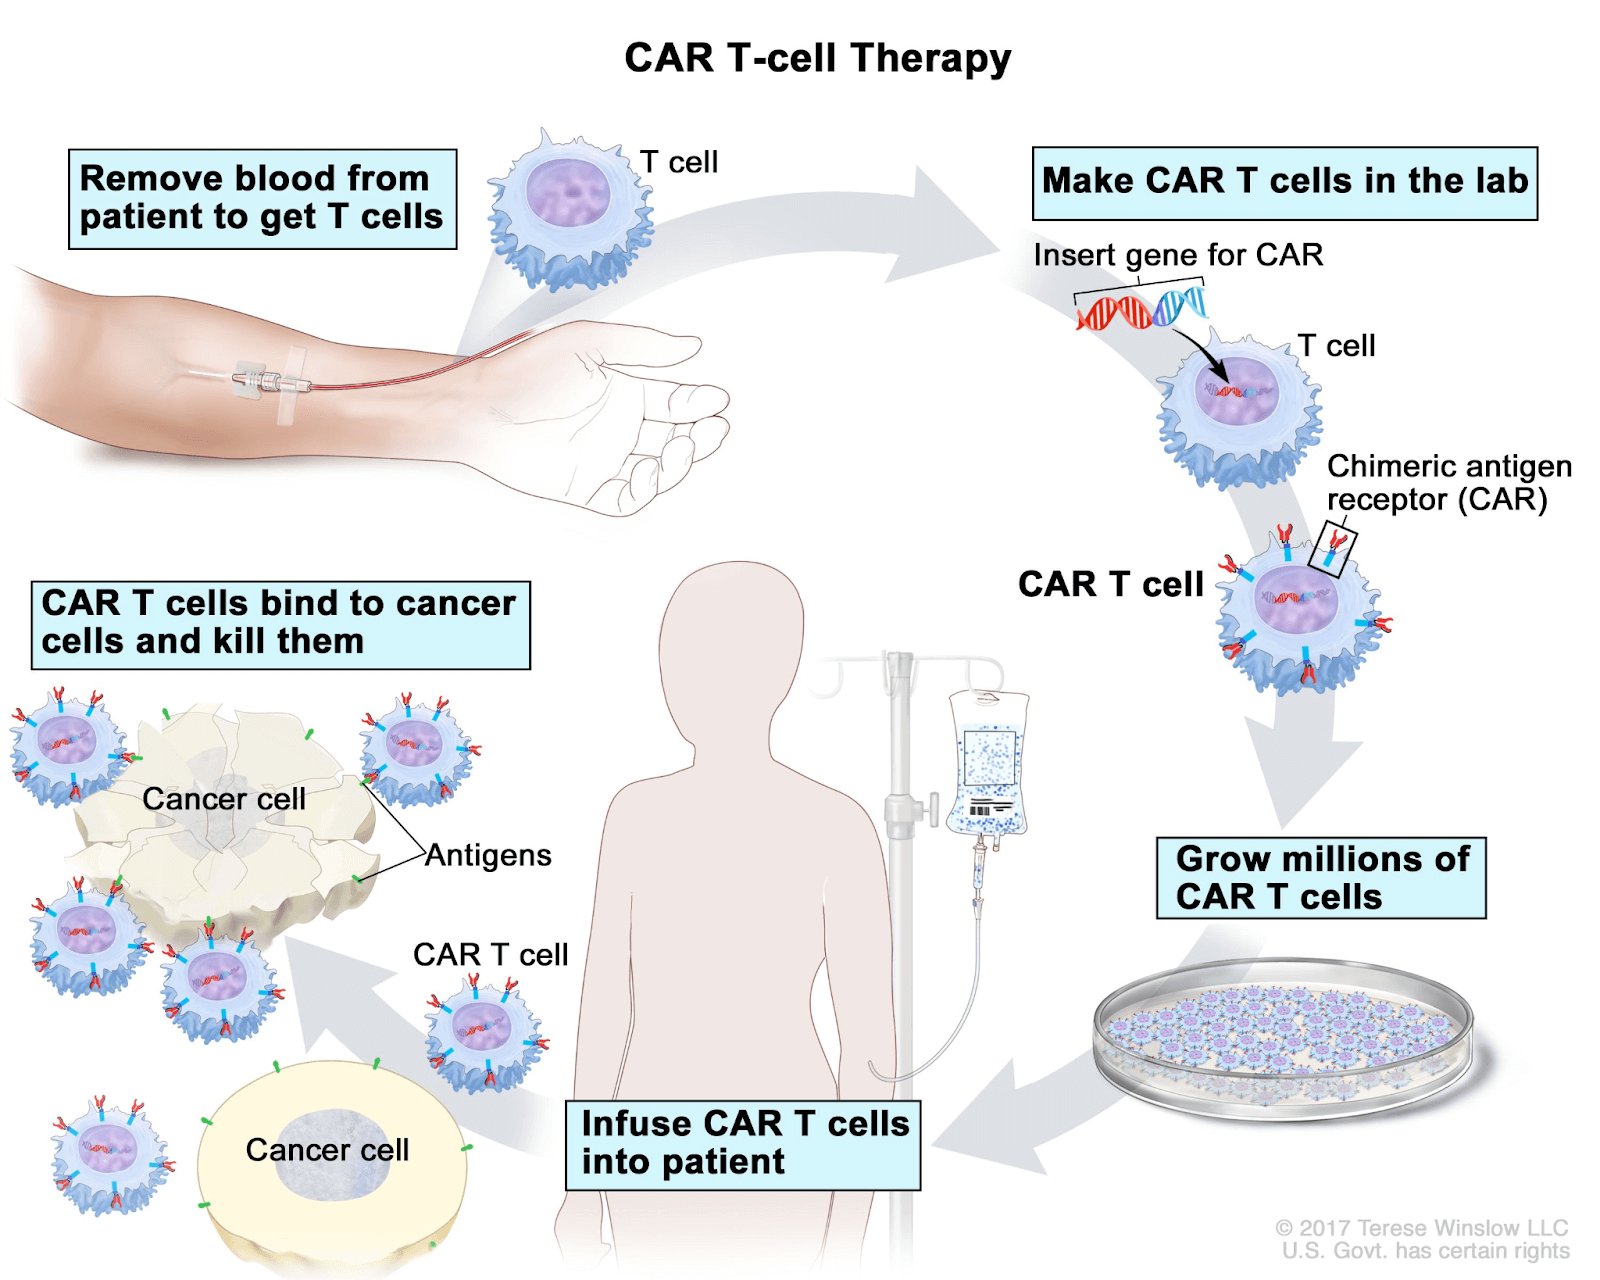 Car t cells